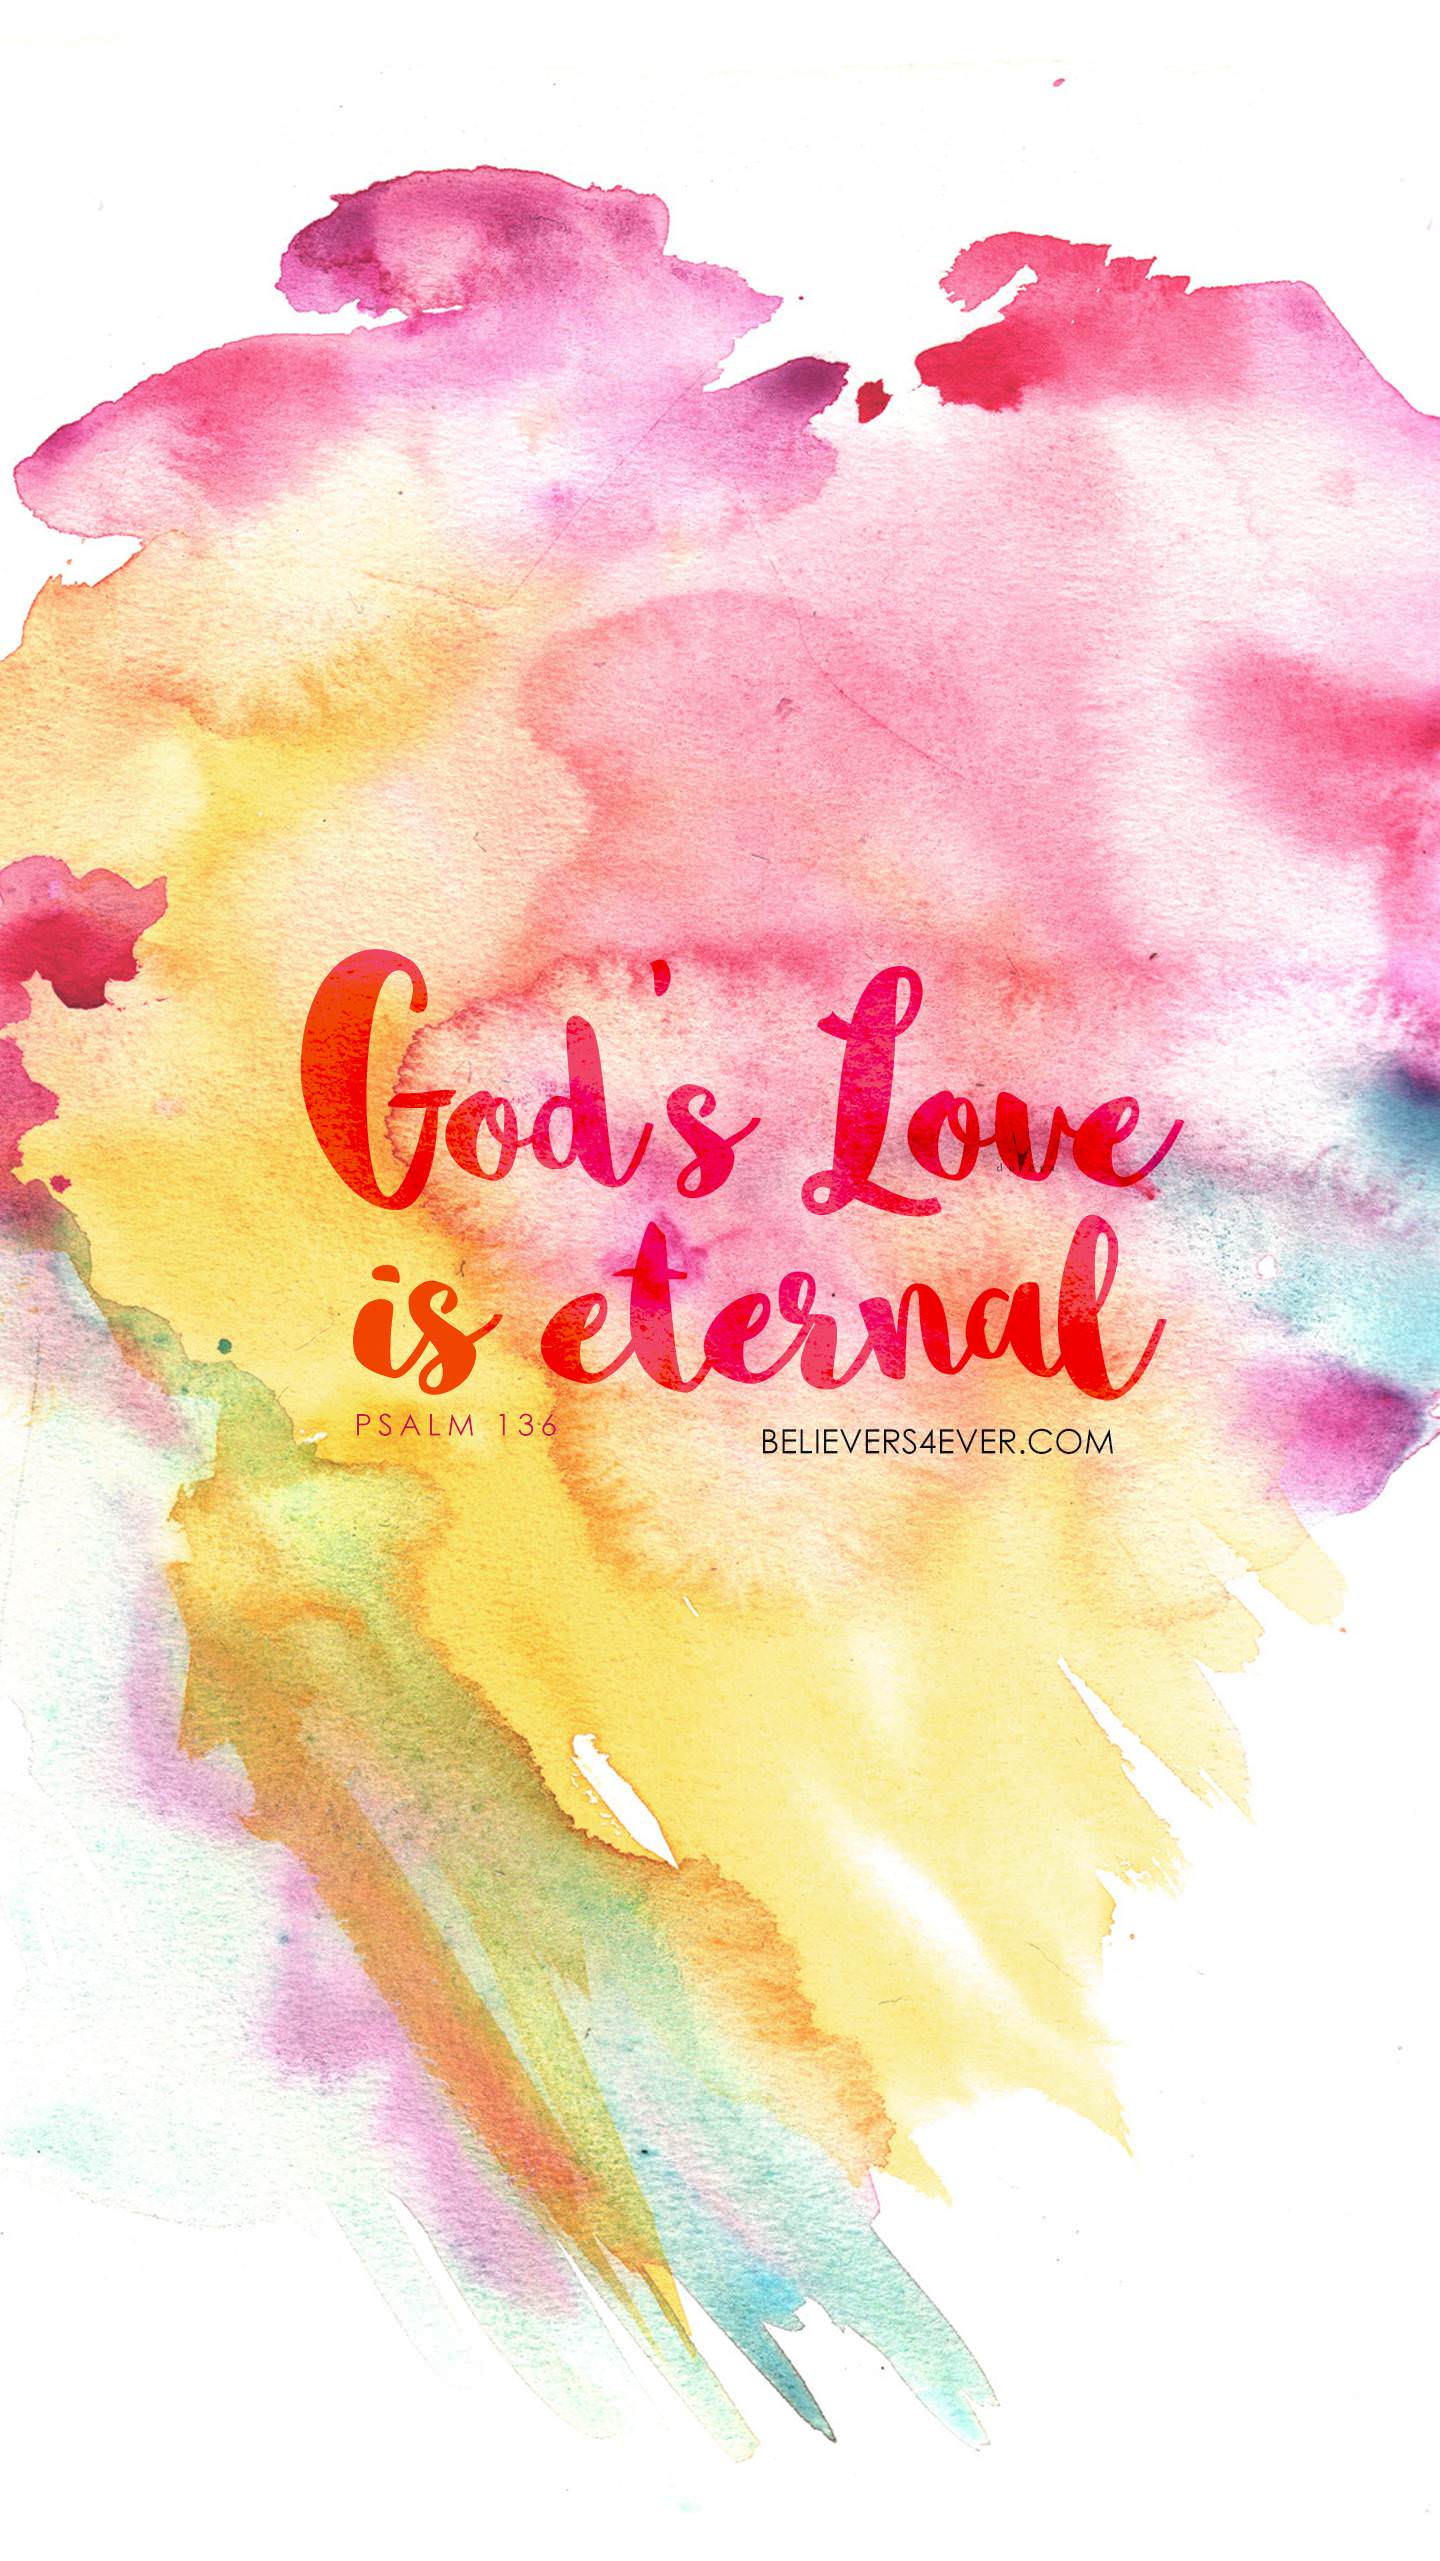 God's love is eternal